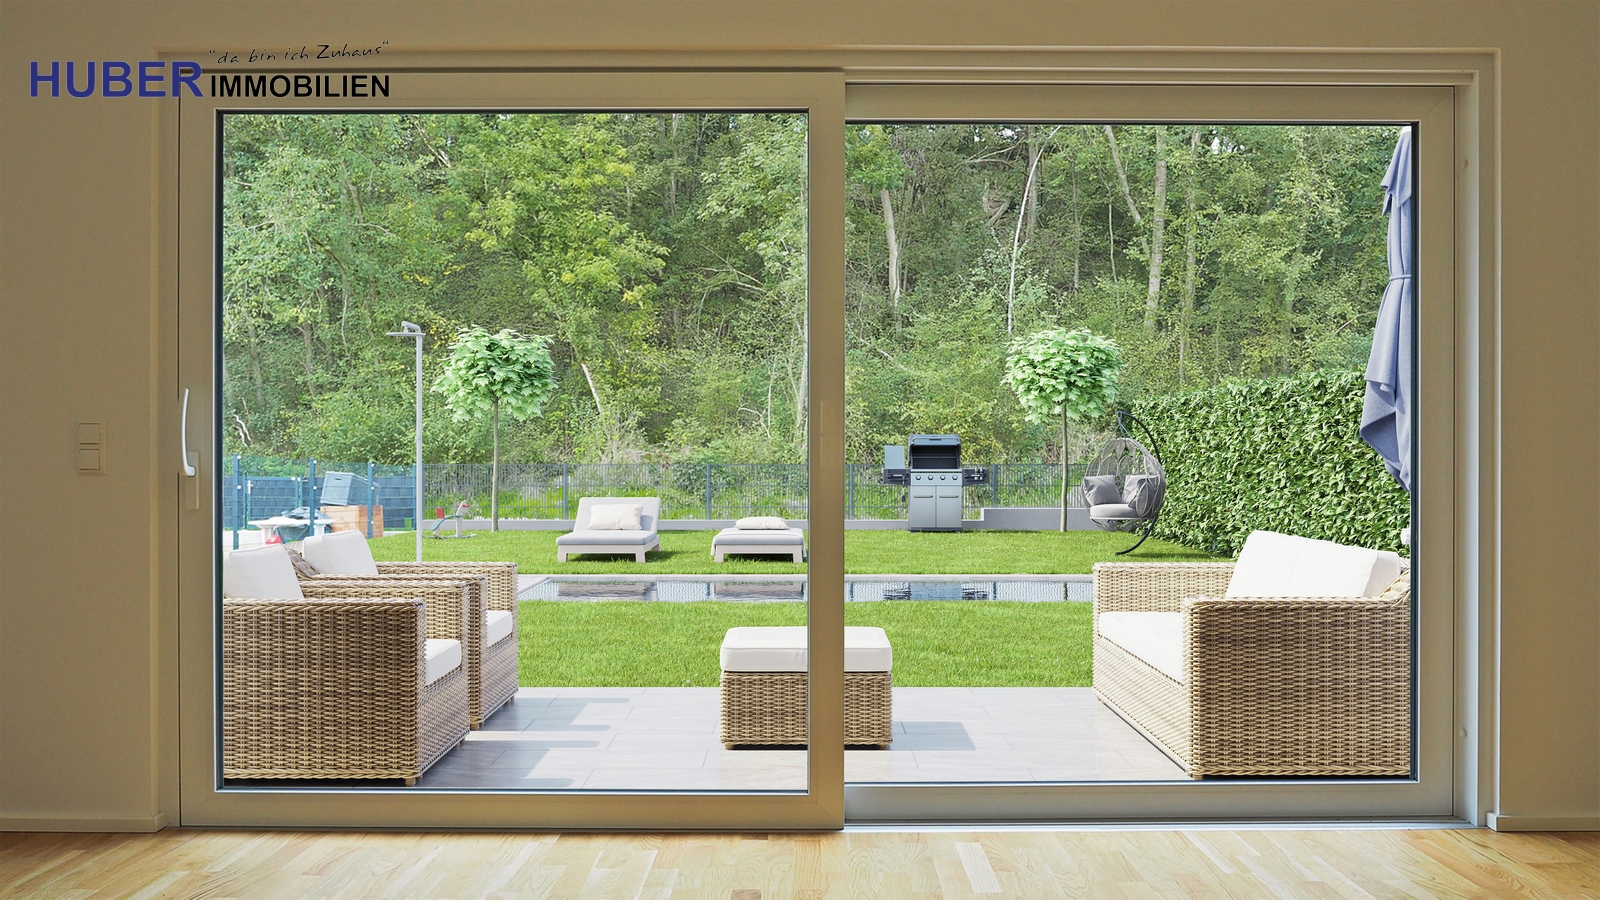 Blick vom Wohnbereich in den Garten. Garten ist visualisiert (Möbel, Pool, Gartenzaun)